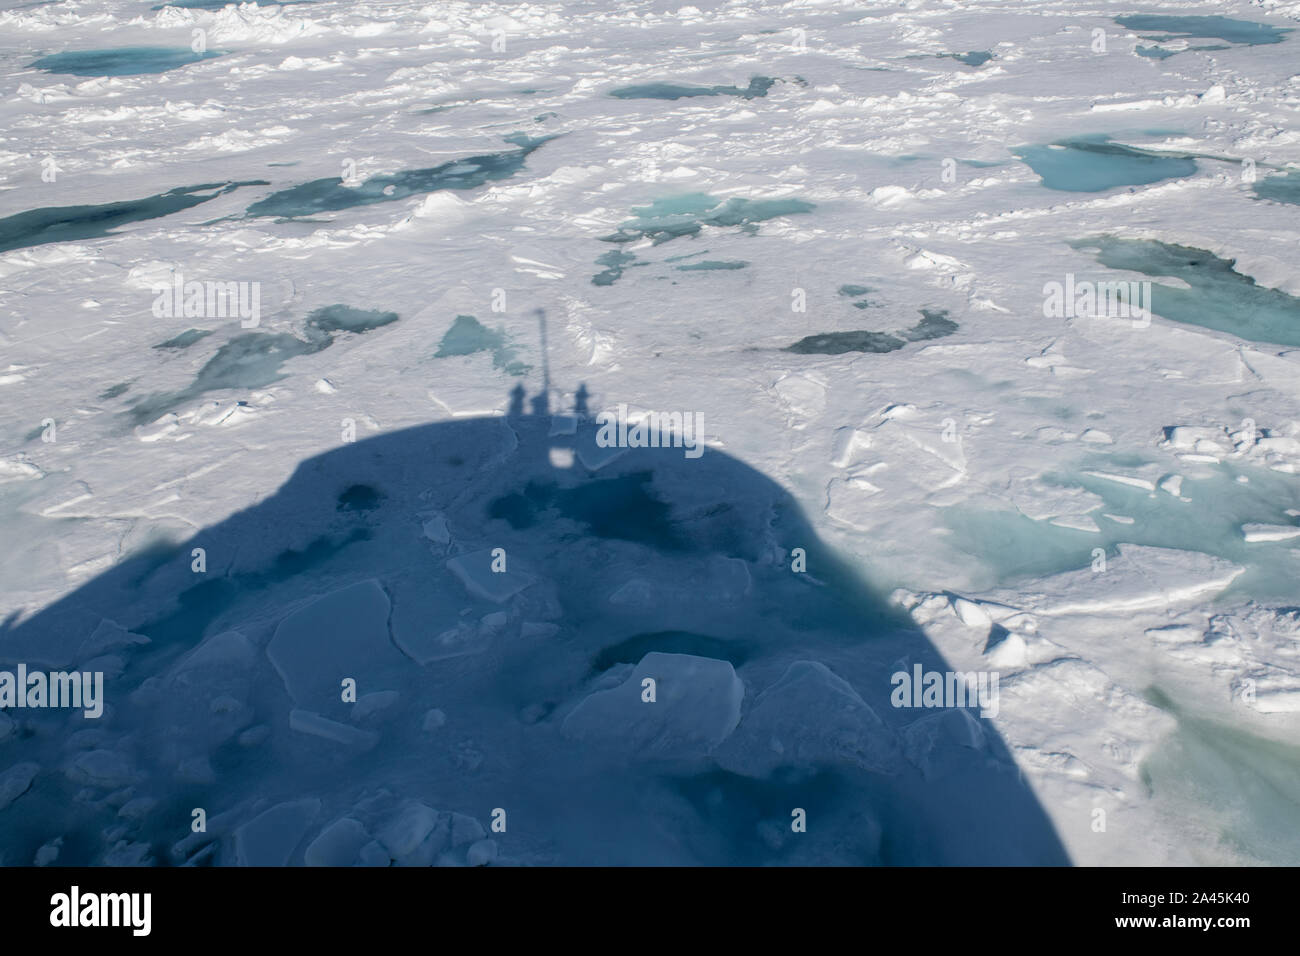 La Russia, alta artico, Franz Josef Land. Rudolf isola. Capo Fligely aka Tegetthoff del capo. Ombra di icebreaker andando attraverso il ghiaccio. Foto Stock